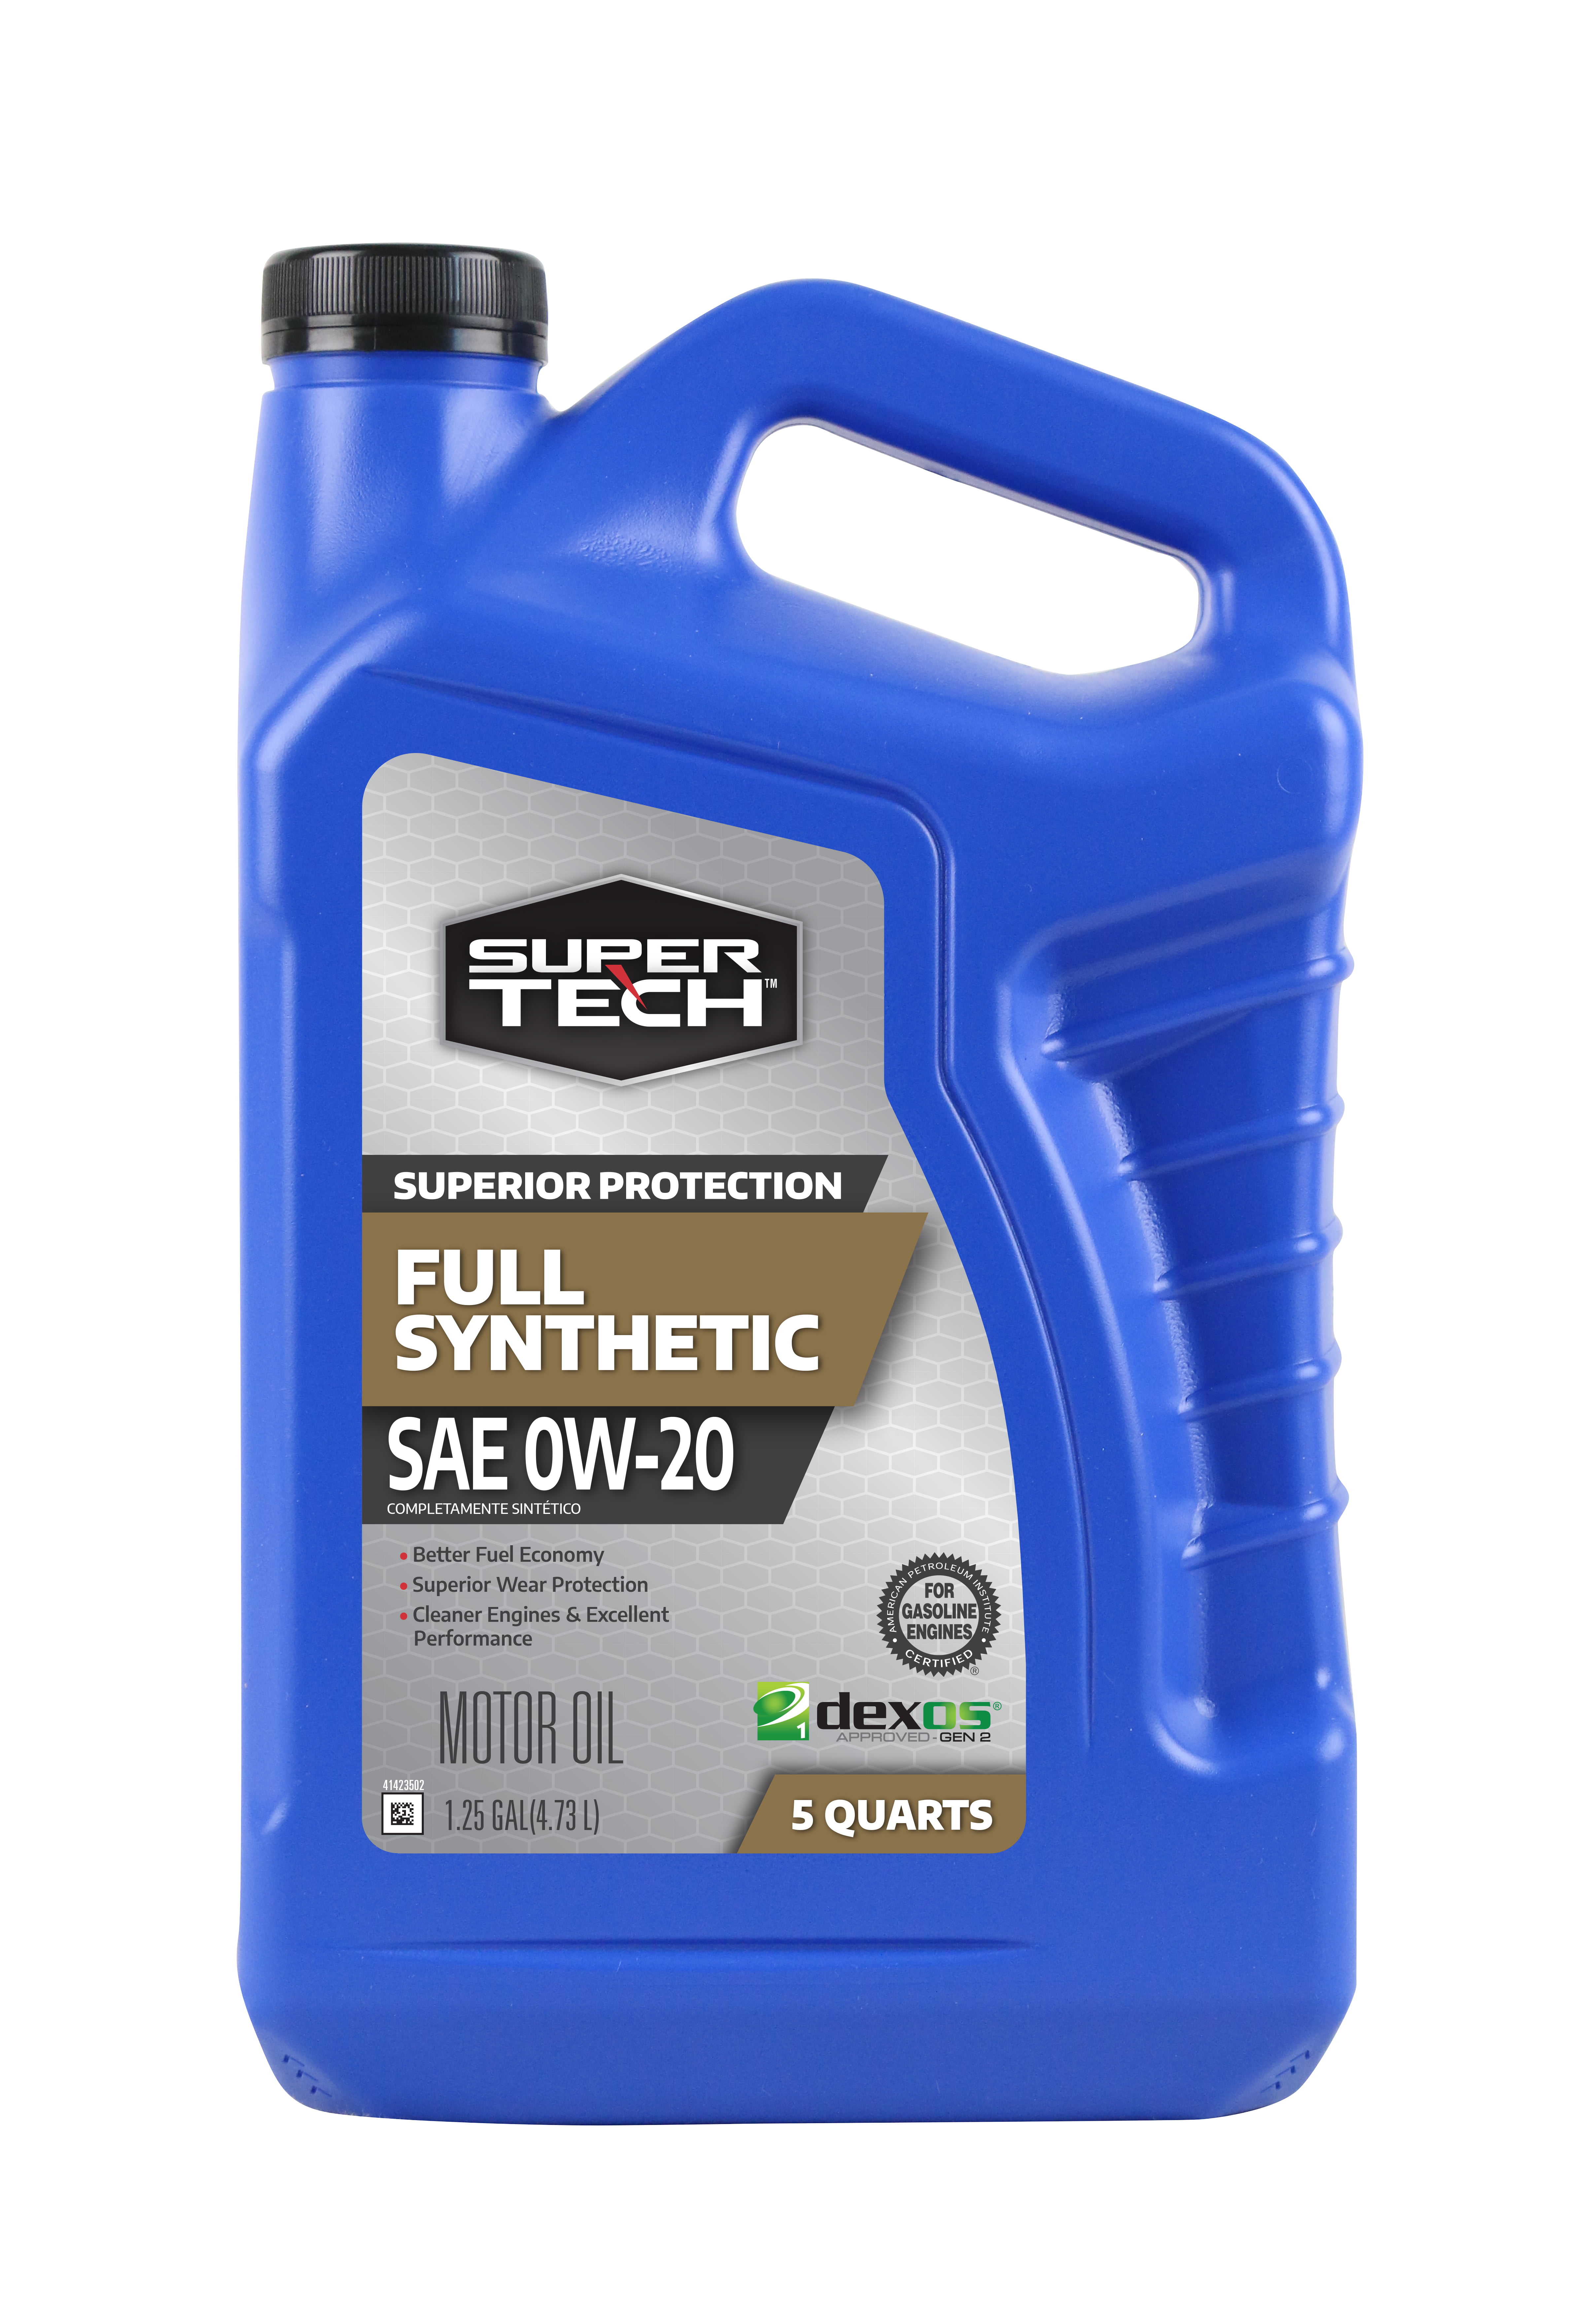 Super Tech Full Synthetic Sae 0w Motor Oil 5 Quarts Walmart Com Walmart Com